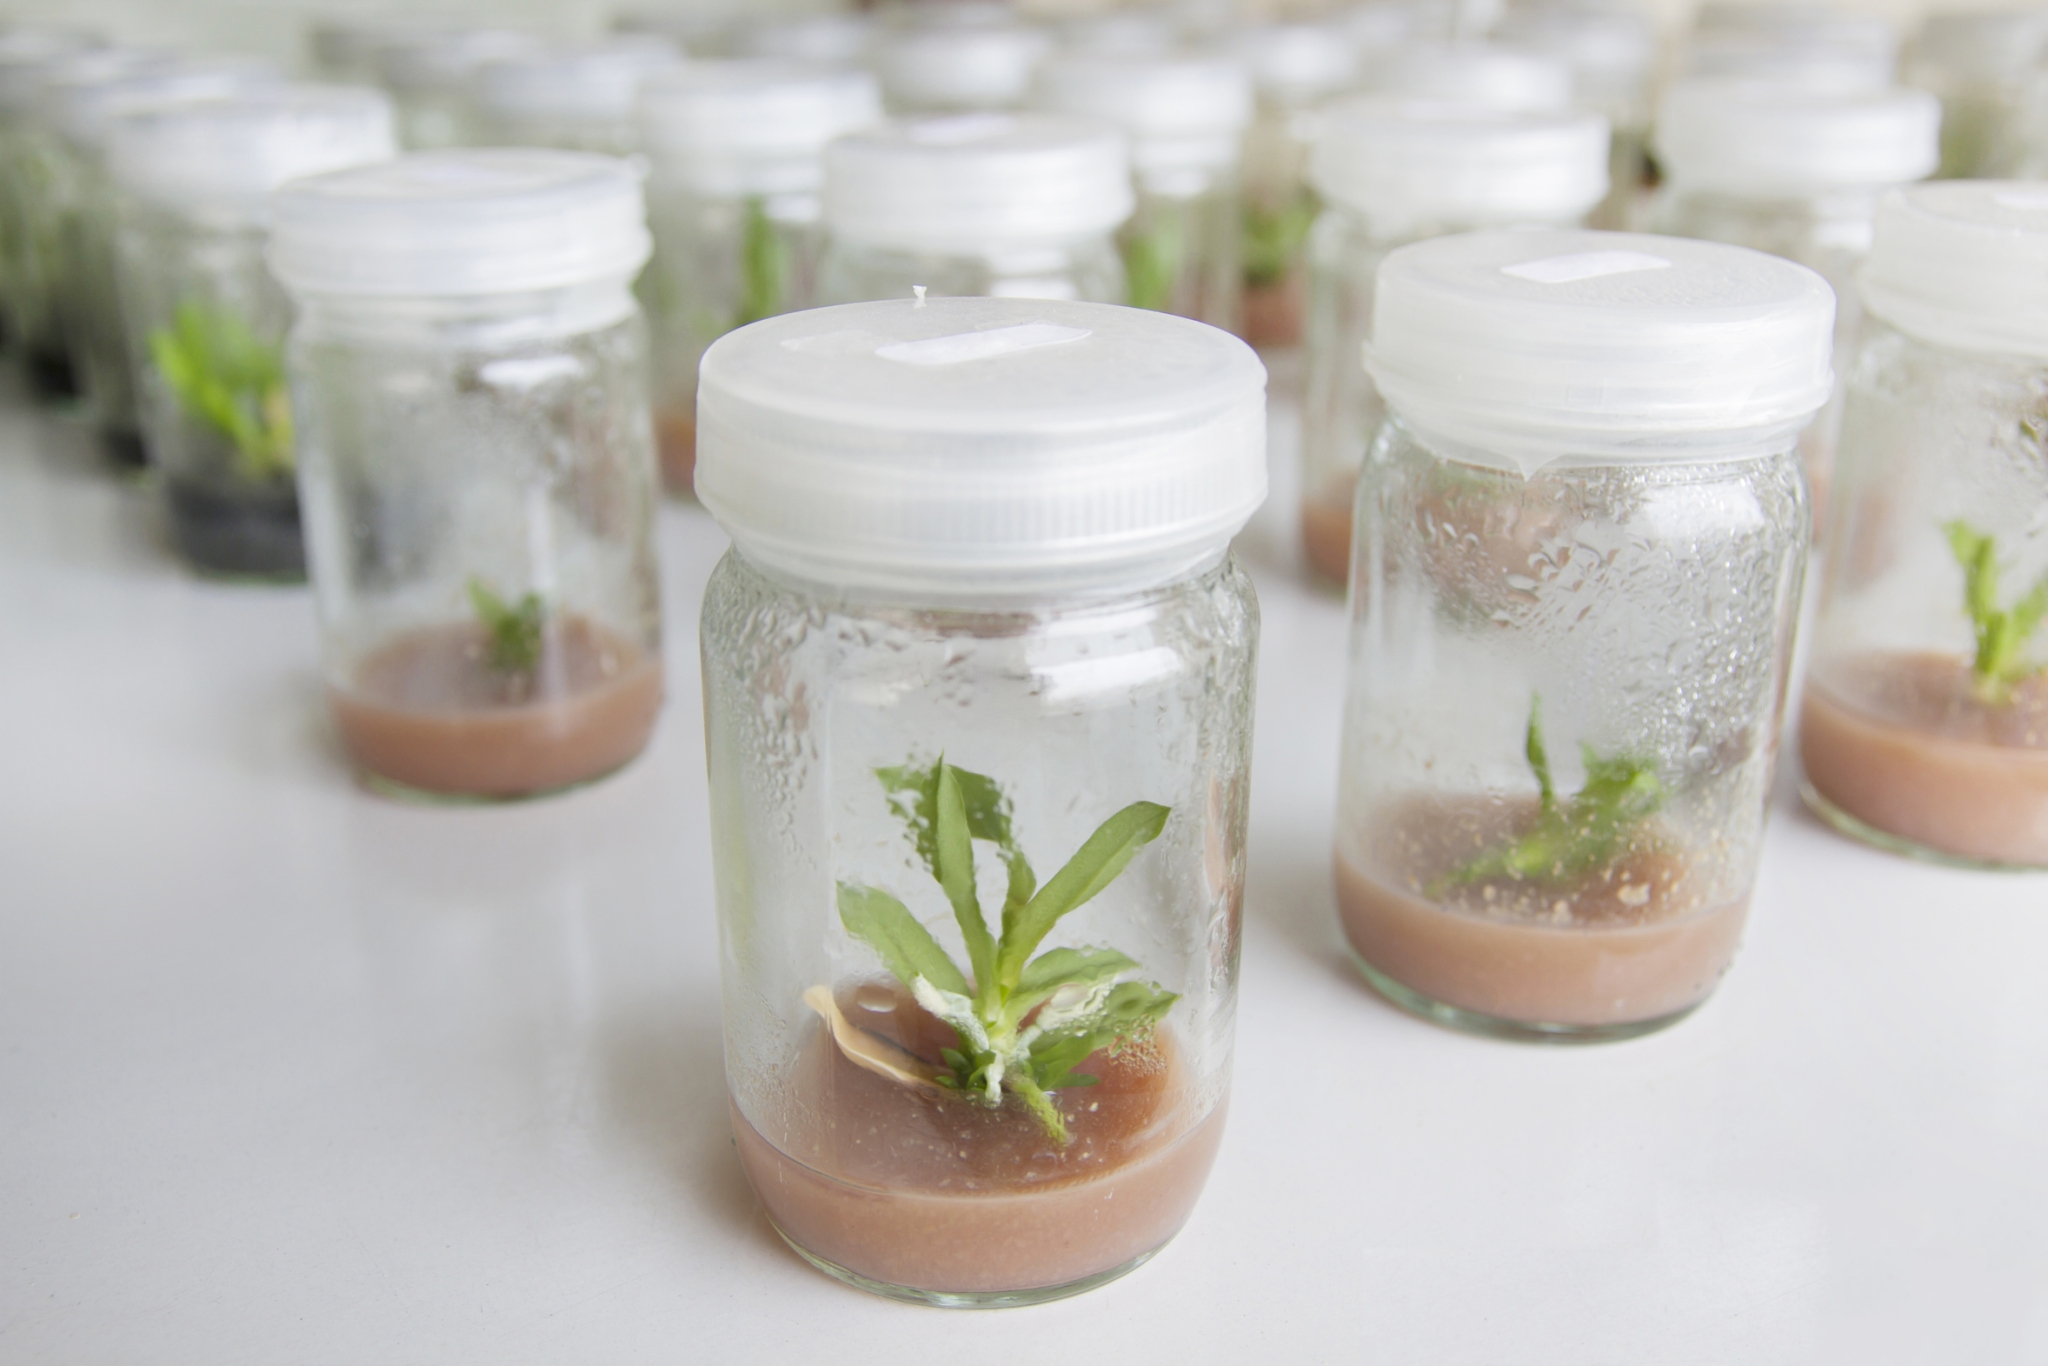 Mehrere kleine Gläser, in denen durch Mikropropagation Pflanzen herangezüchtet werden. Das Bild soll die gentechnische Veränderung von Pflanzen symbolisieren.